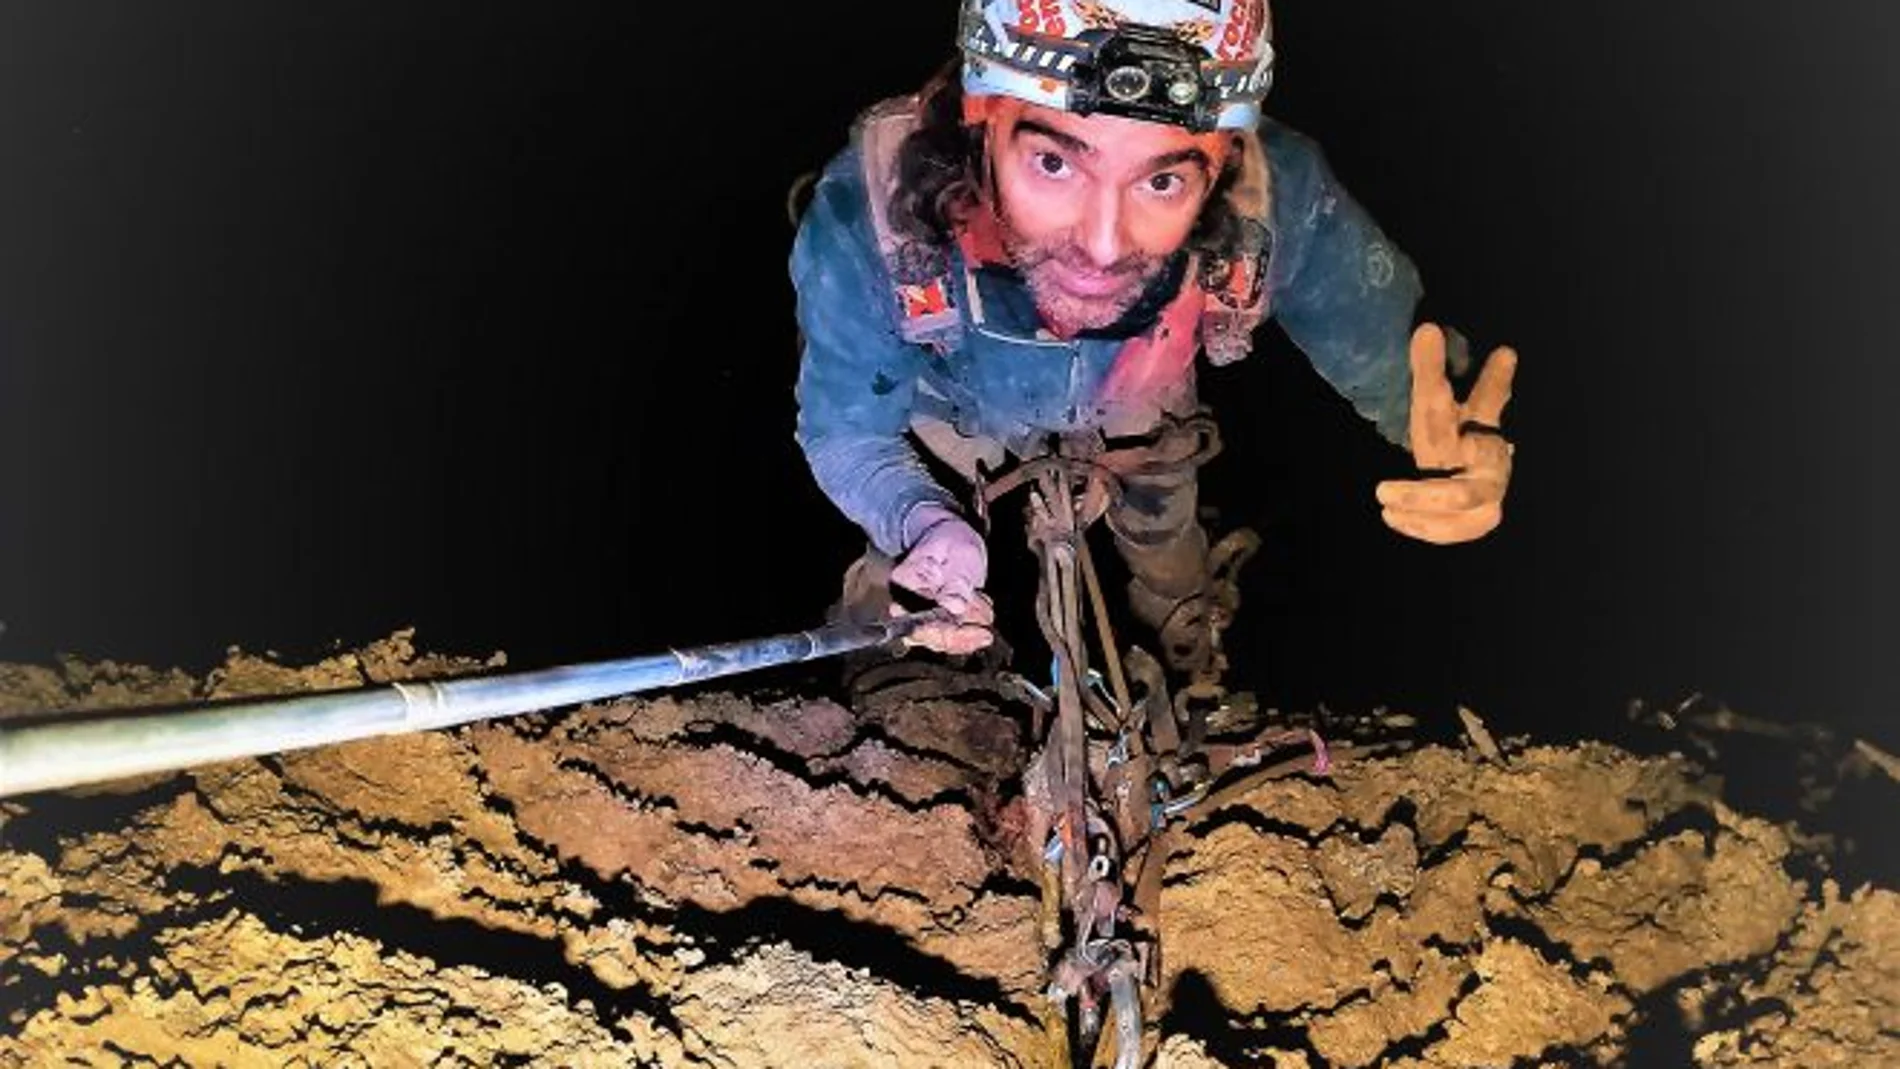 La aventura de 'Pelut' y 'Nofre' en la cueva más grande de España: "En caso de accidente solo tienes a tu compañero"